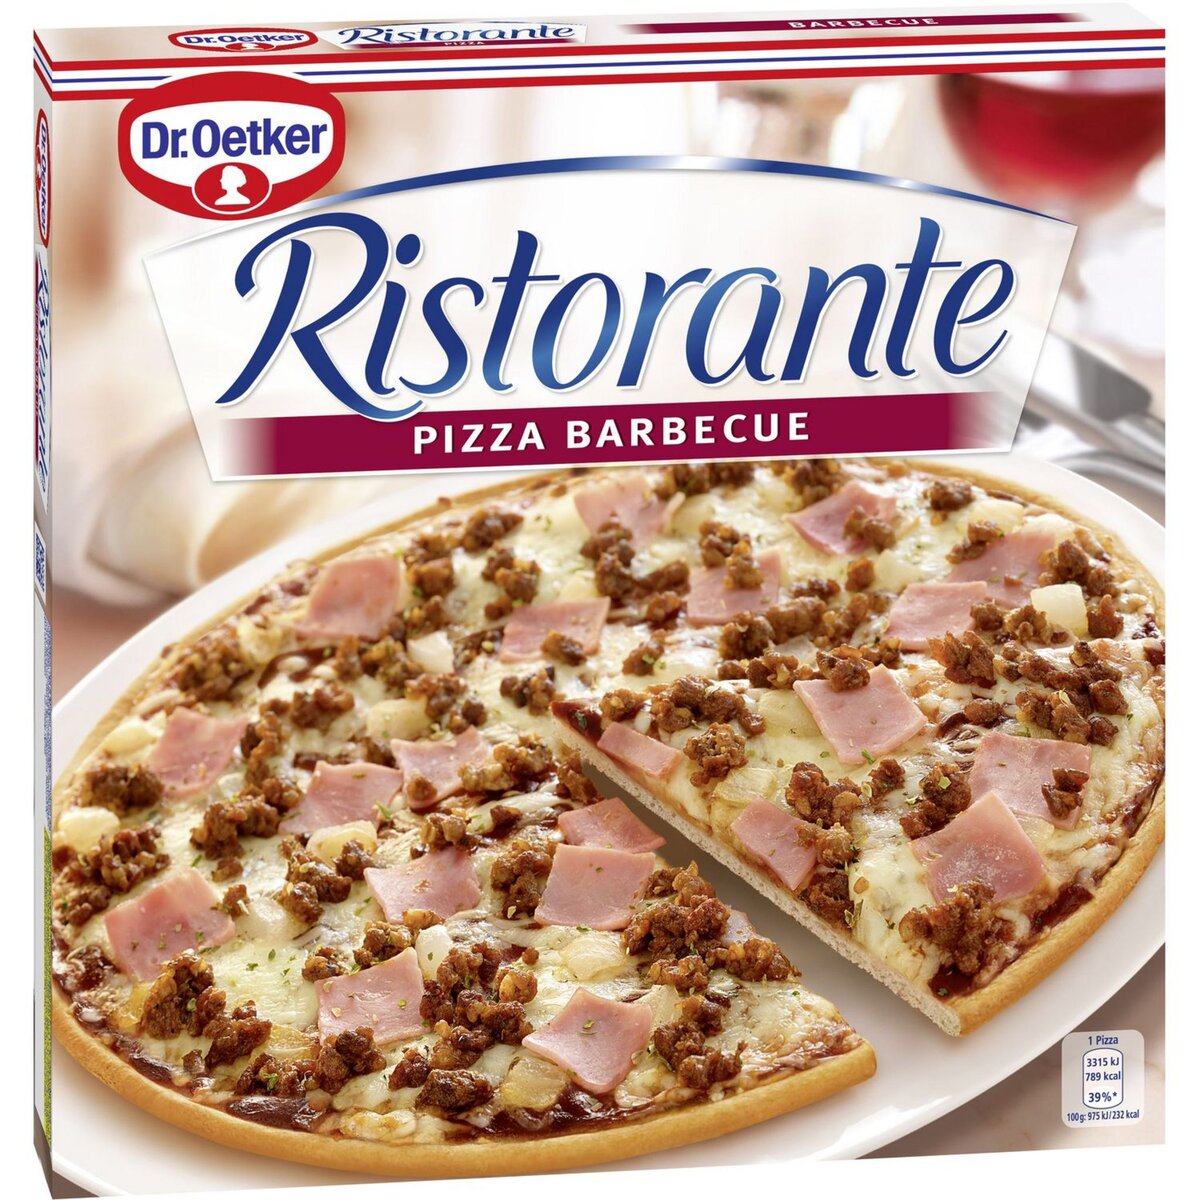 RISTORANTE Ristorante pizza barbecue 340g